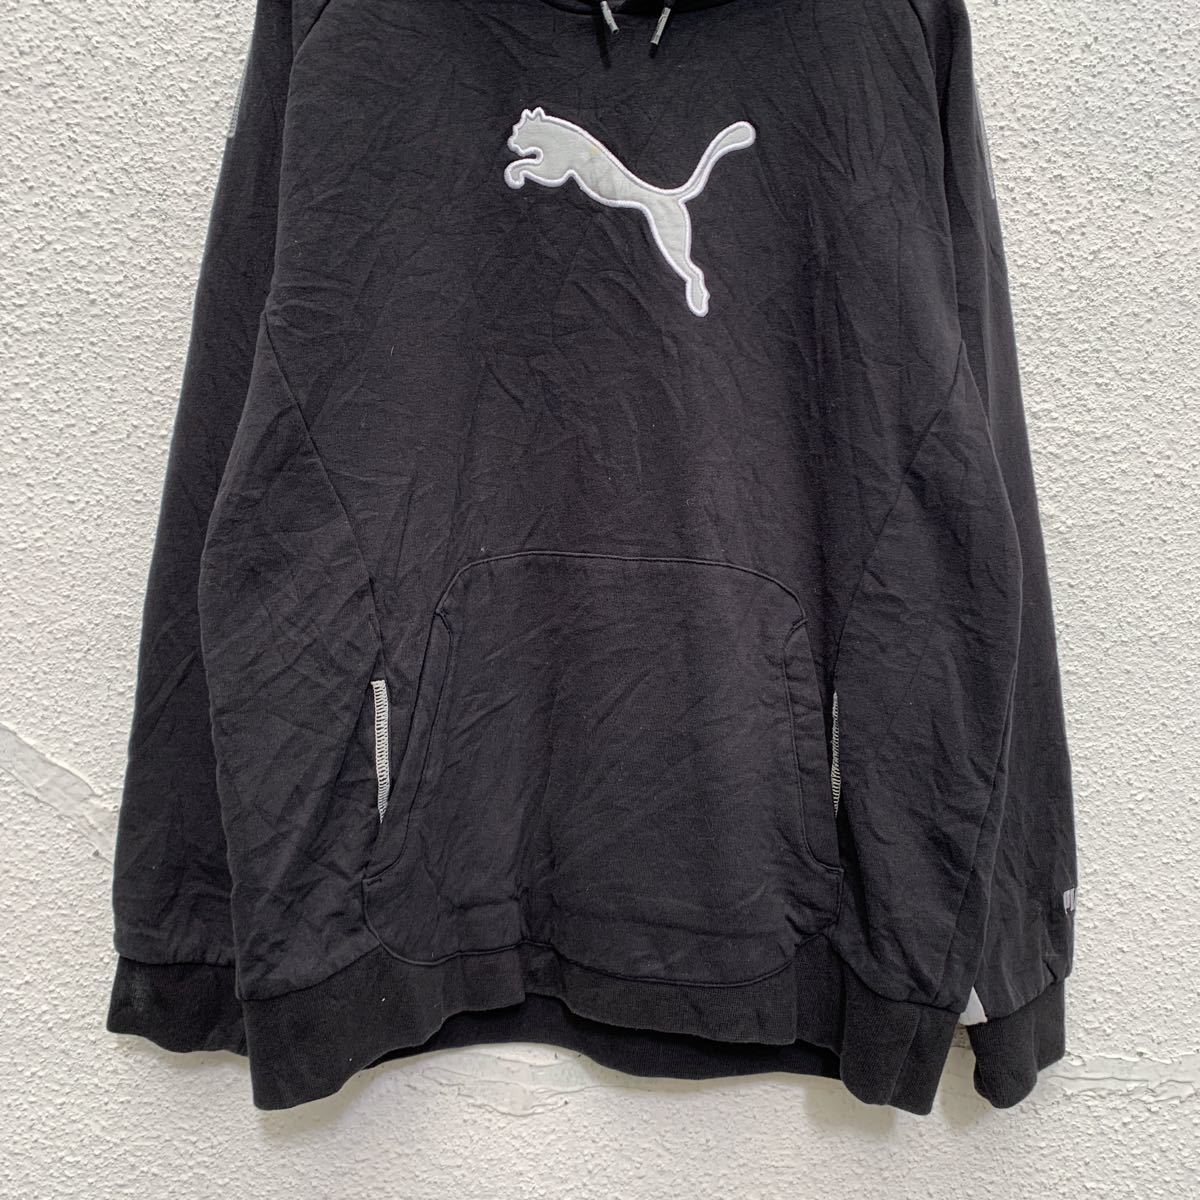 PUMA тренировочный Parker Youth размер XL 160 черный серый Puma Logo вышивка f-ti- спорт б/у одежда . America скупка a502-5791